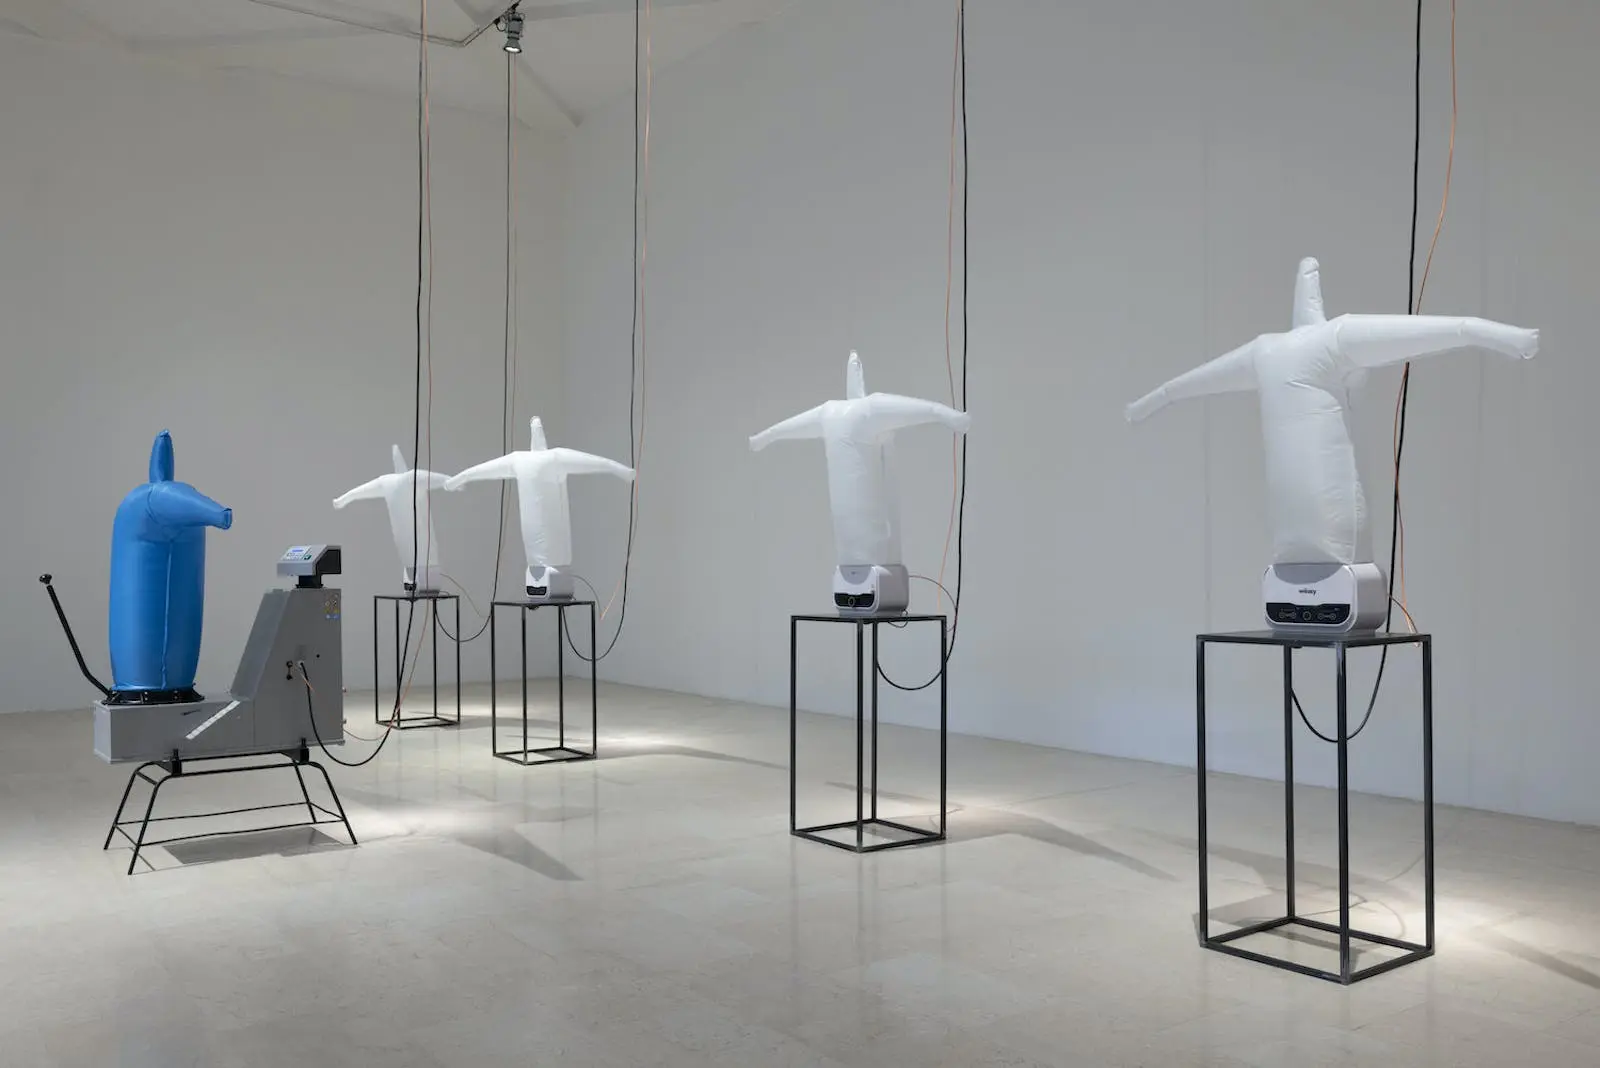 All Those Stuffed Shirts, installazione di Anna Franceschini, Triennale Milano, 2023. Installation view, foto Andrea Rossetti